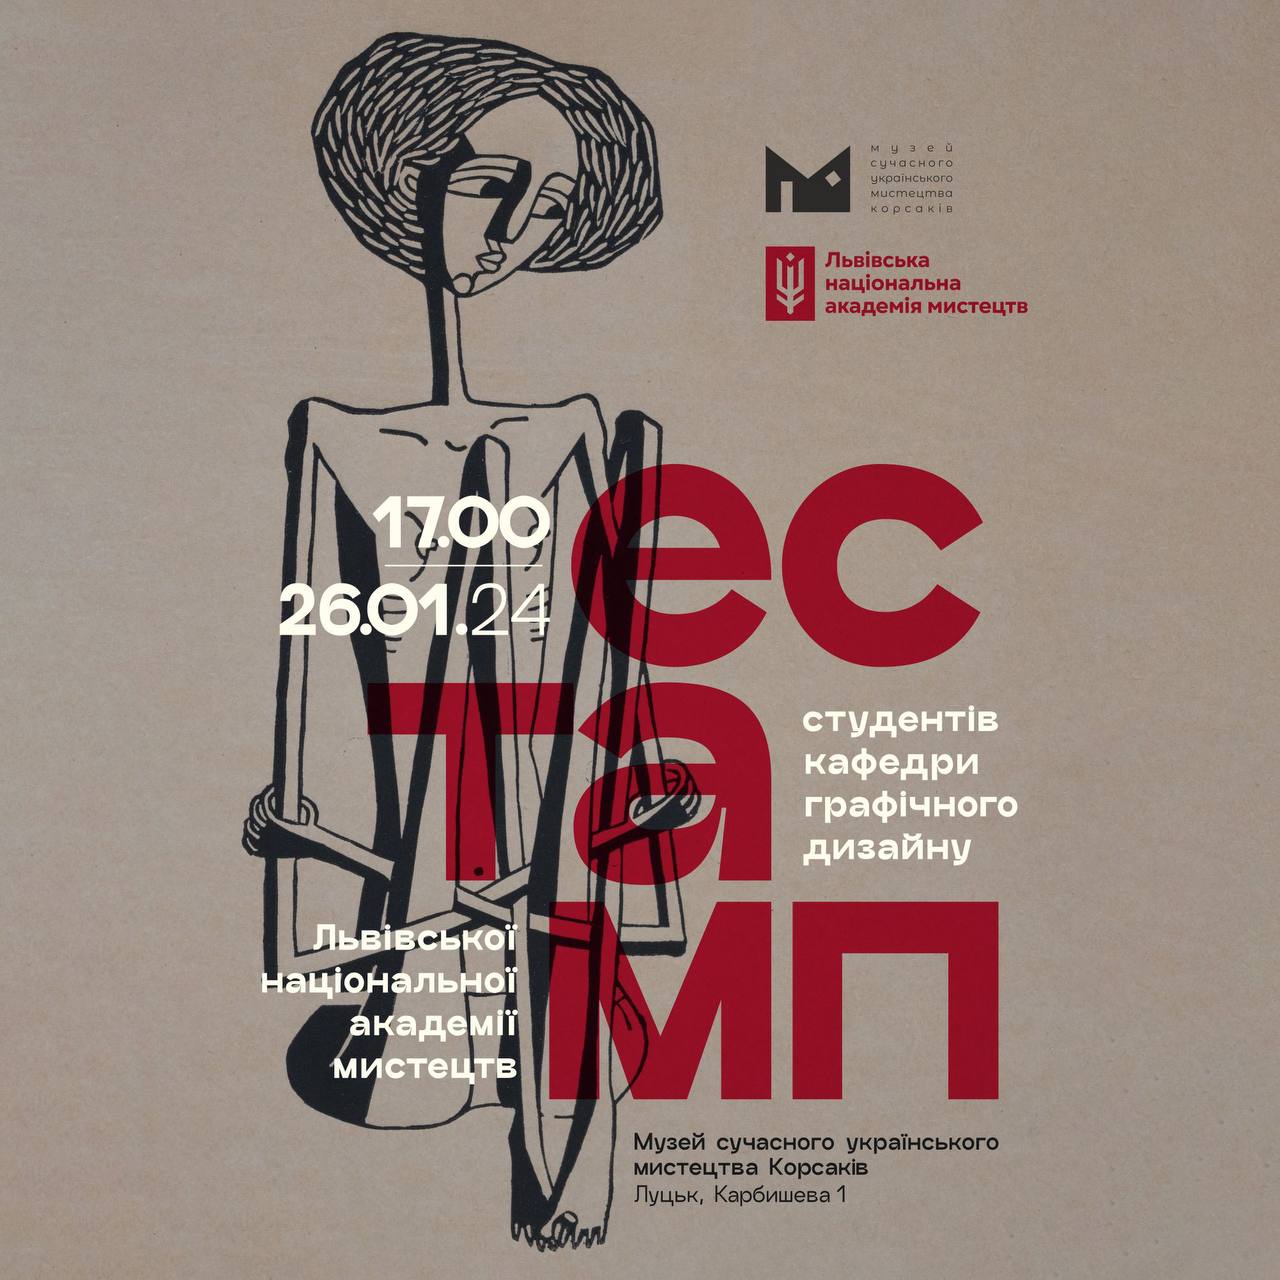 (Українська) 26 січня о 17:00 в Музеї Корсаків відбудеться відкриття виставки робіт студентів кафедри графічного дизайну Львівської національної академії мистецтв «Естамп»